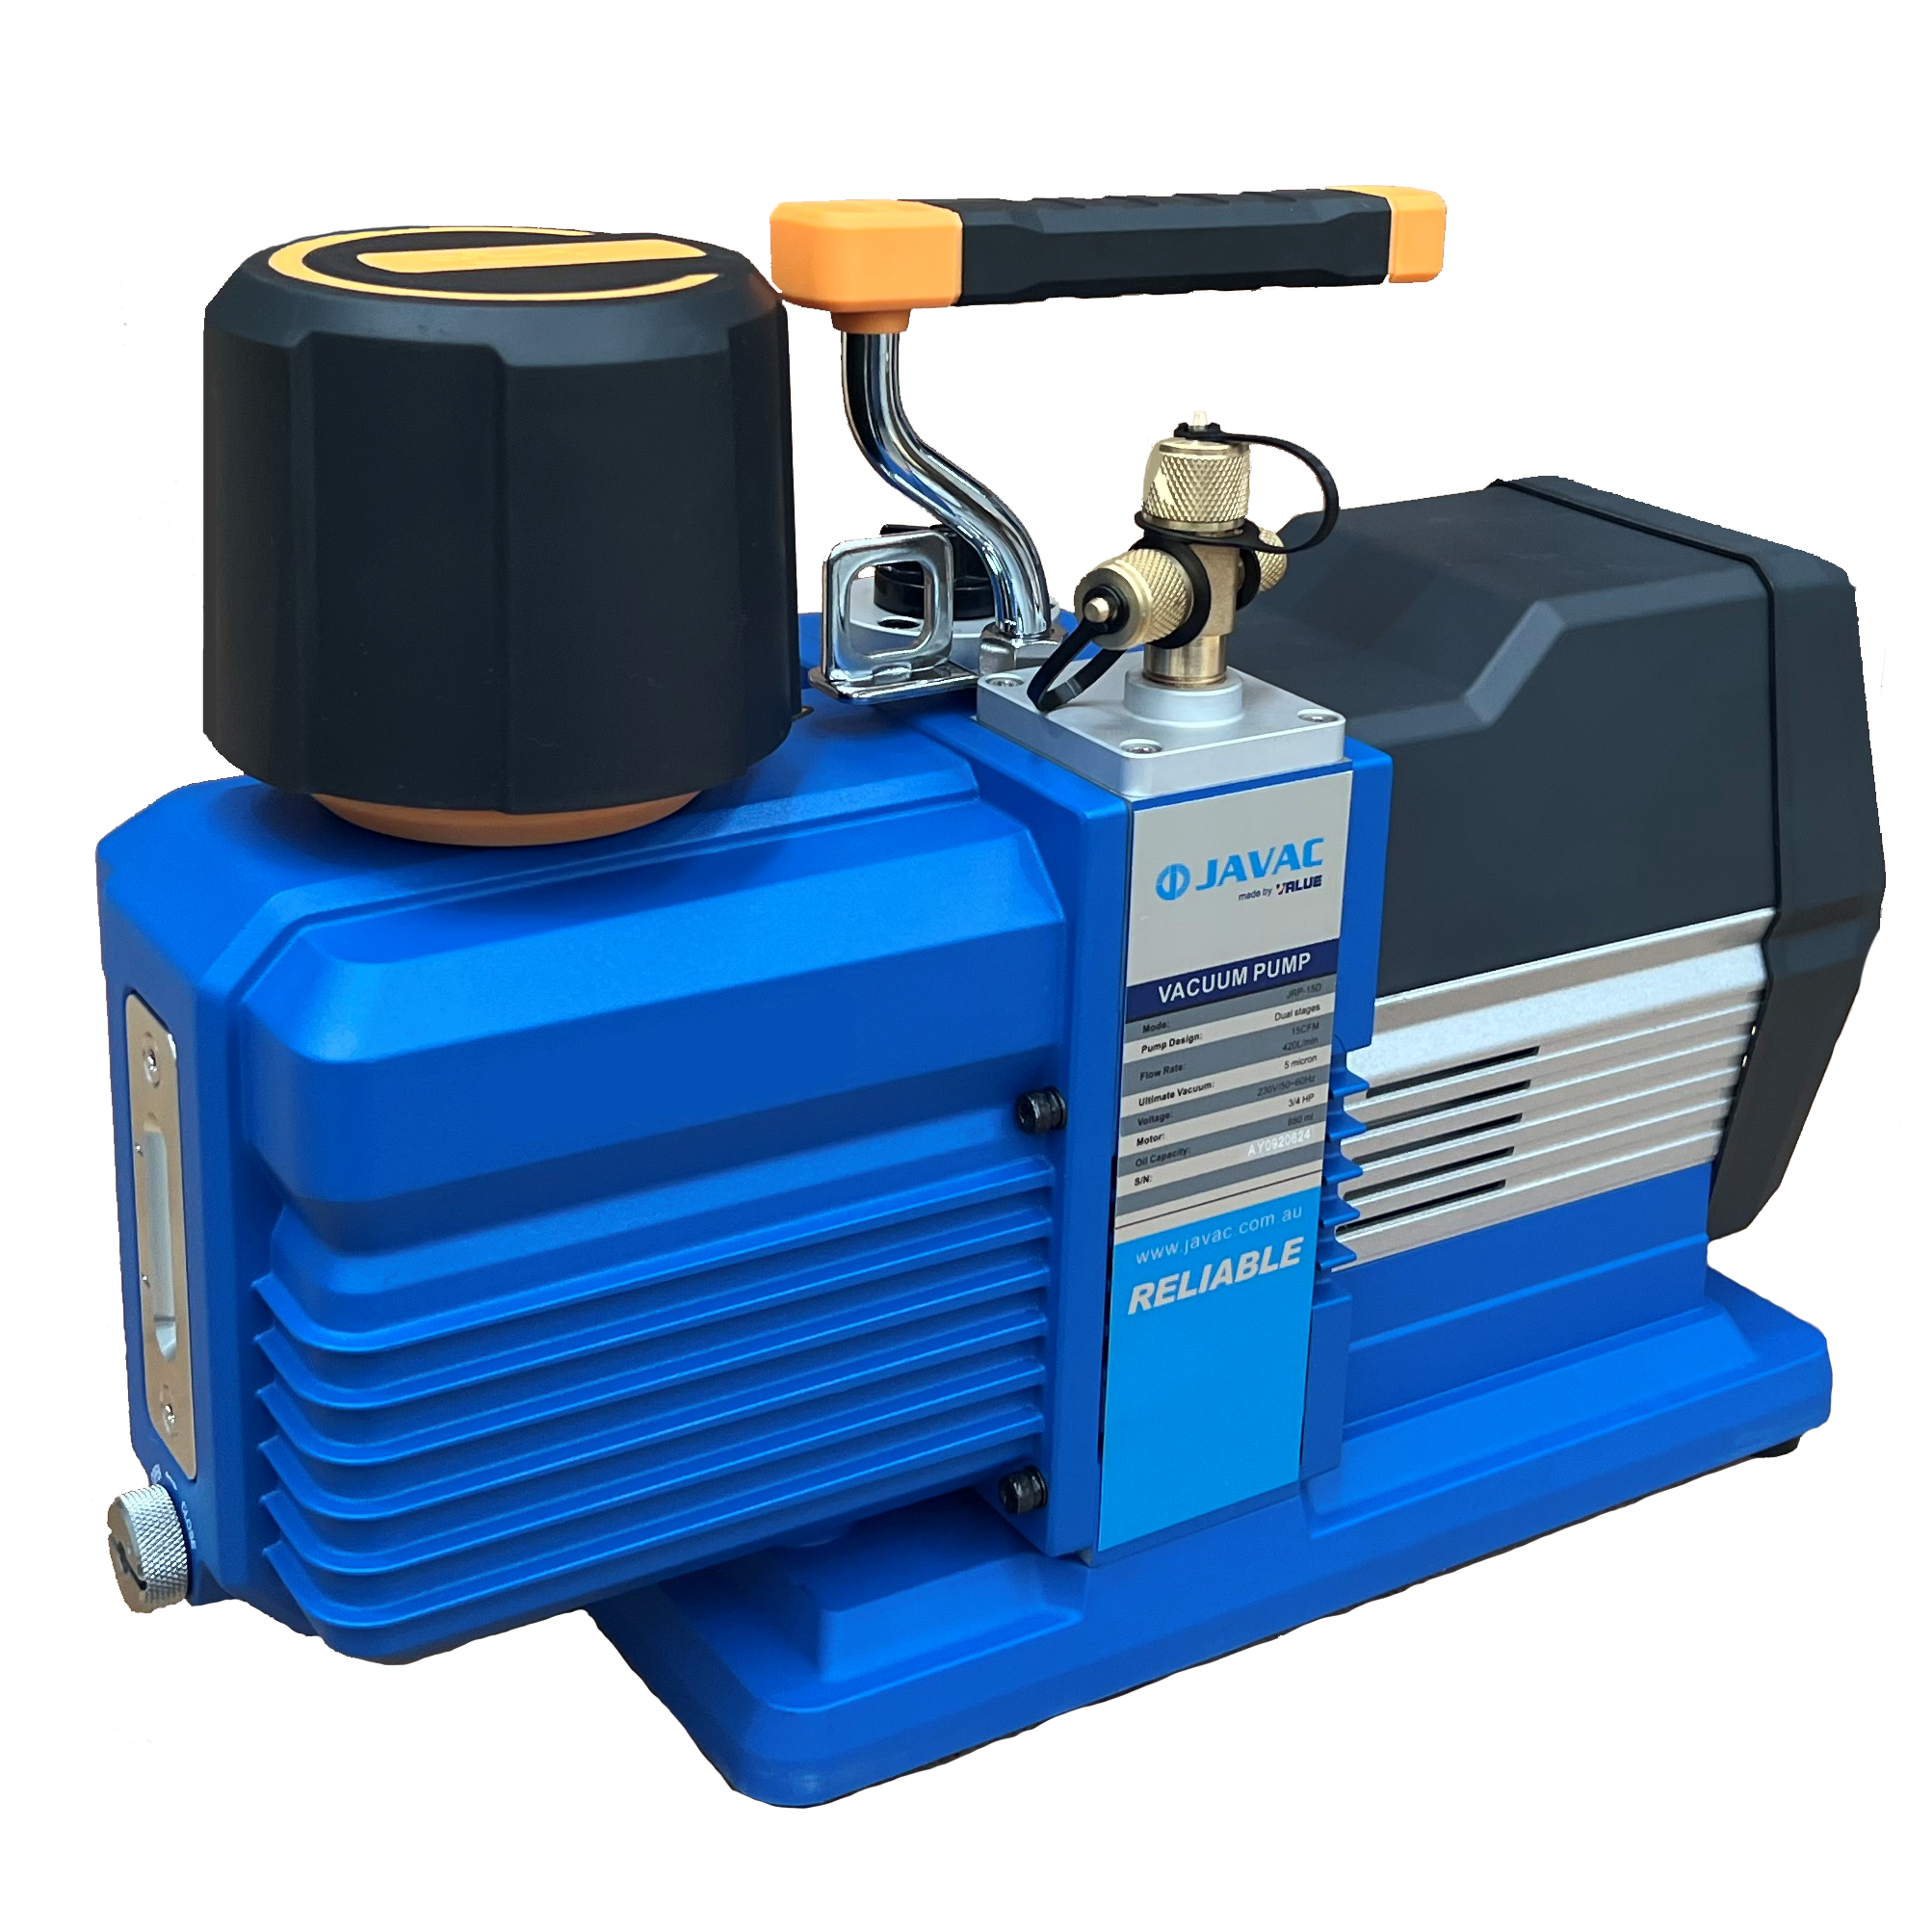 JAVAC DD400, 420 L/min, 2-stage Vacuum Pump - R32 Compliant